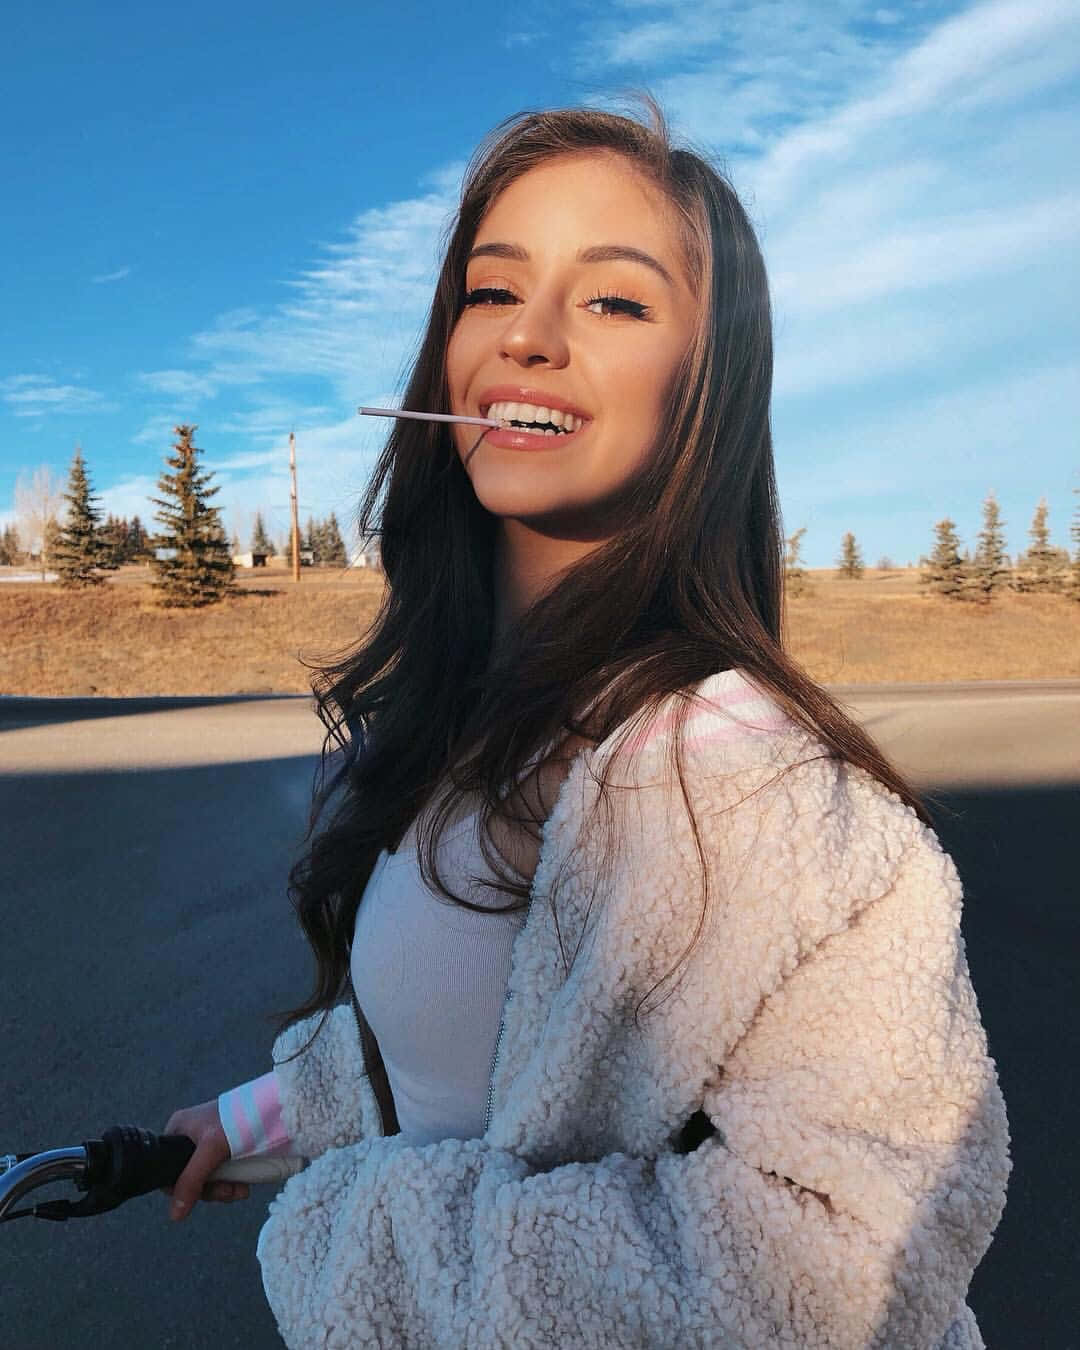 A beautiful young girl enjoying time outdoors